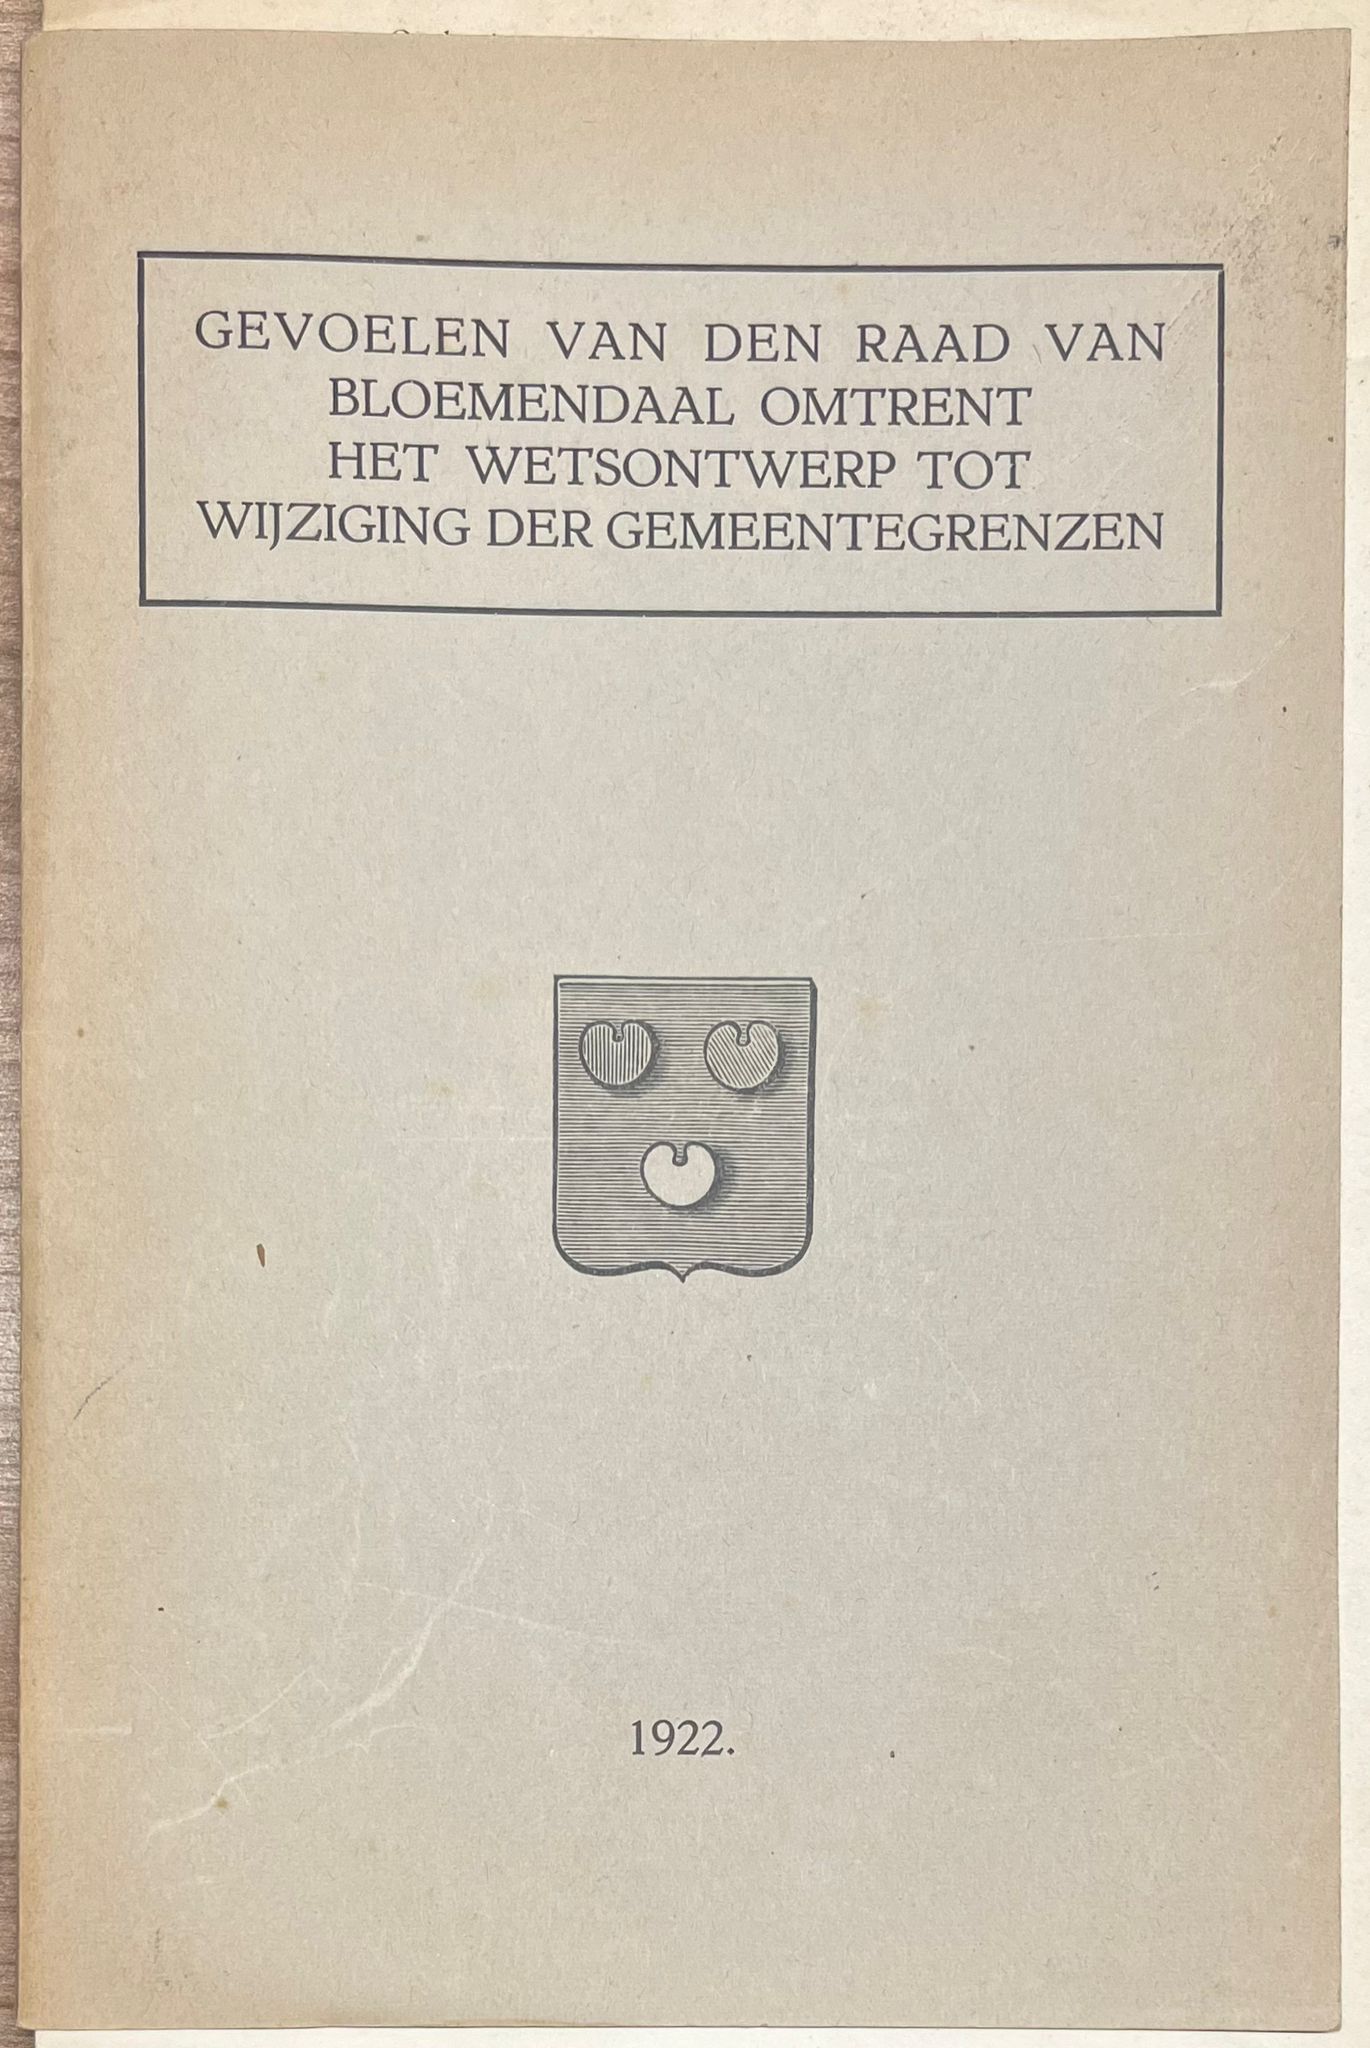  - Set of 4, 1918-1922, Haarlem | Gevoelen van den raad van Bloemendaal omtrent het wetsontwerp tot wijziging der gemeentegrenzen, [s.n.], [s.l.], 1922, 3 vols.